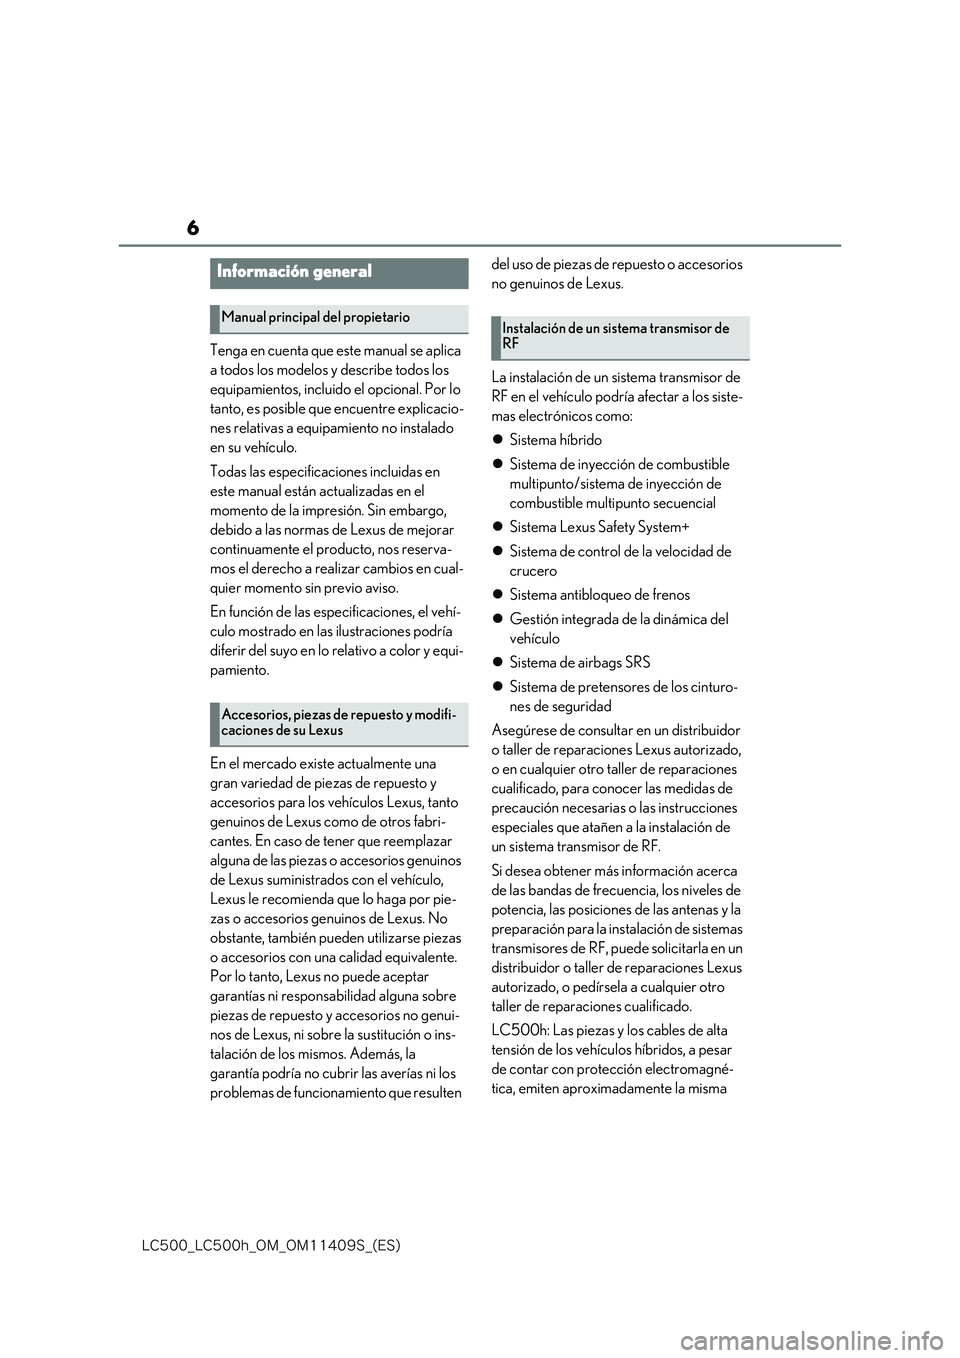 lexus LC500 2018  Manual del propietario (in Spanish) 6
�-�$����@�-�$����I�@�0�.�@�0�.������4�@�	�&�4�

Tenga en cuenta que este manual se aplica  
a todos los modelos y describe todos los 
equipamientos, incluido el opcional. Por lo 
tanto, e